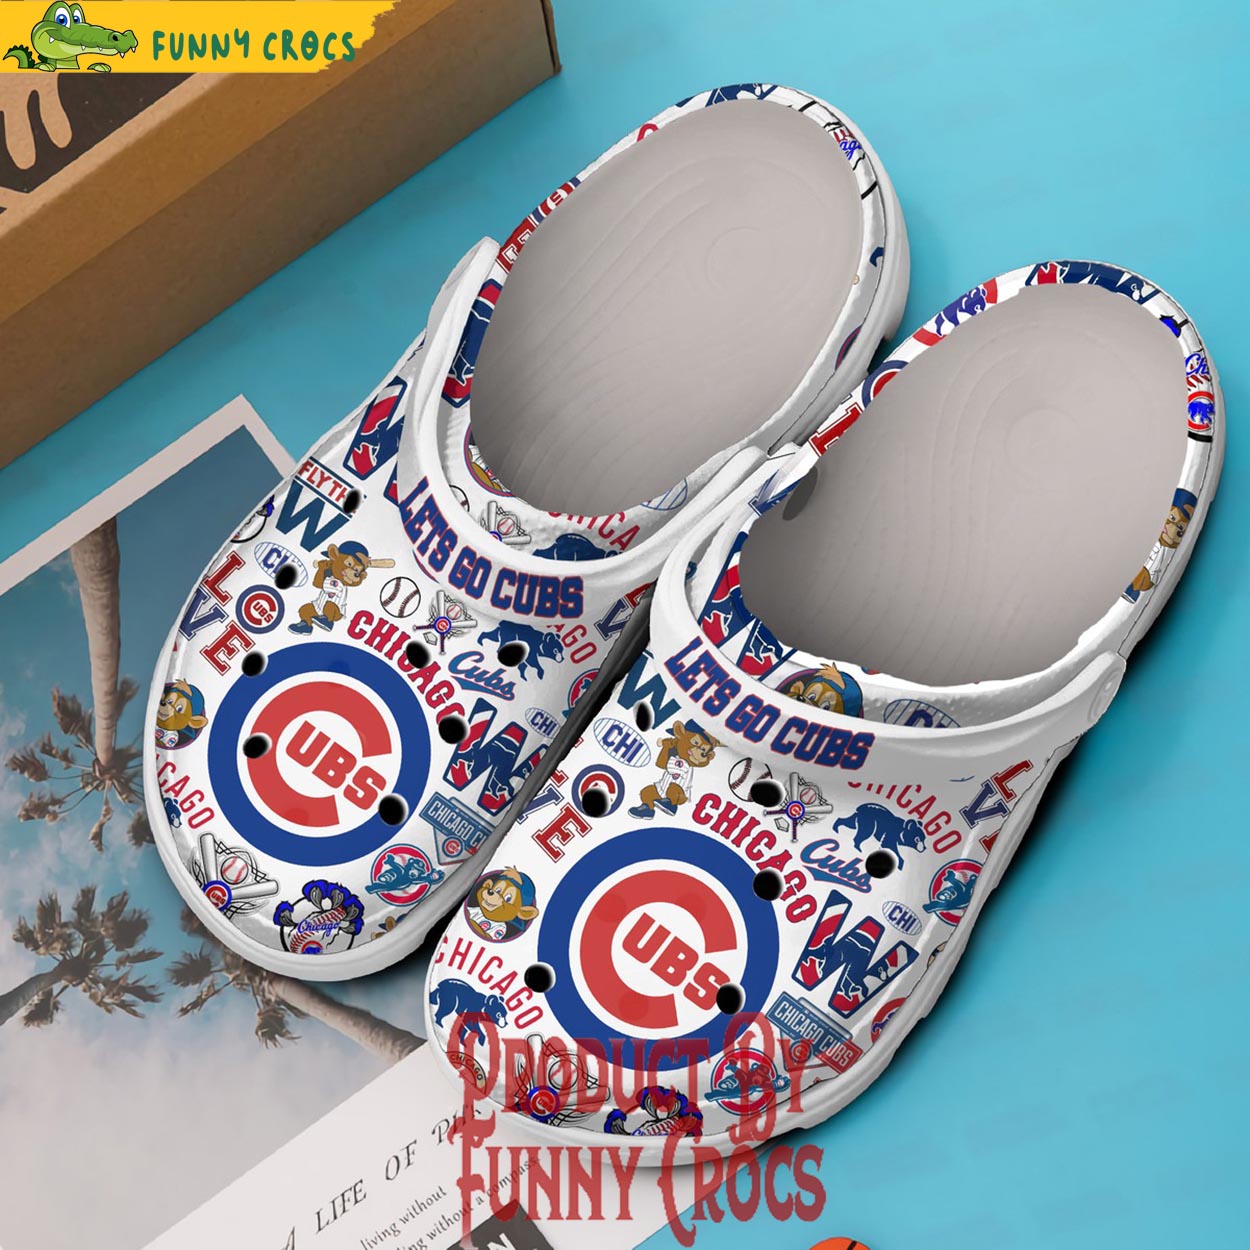 Let's Go Cubs Chicago Cubs Crocs